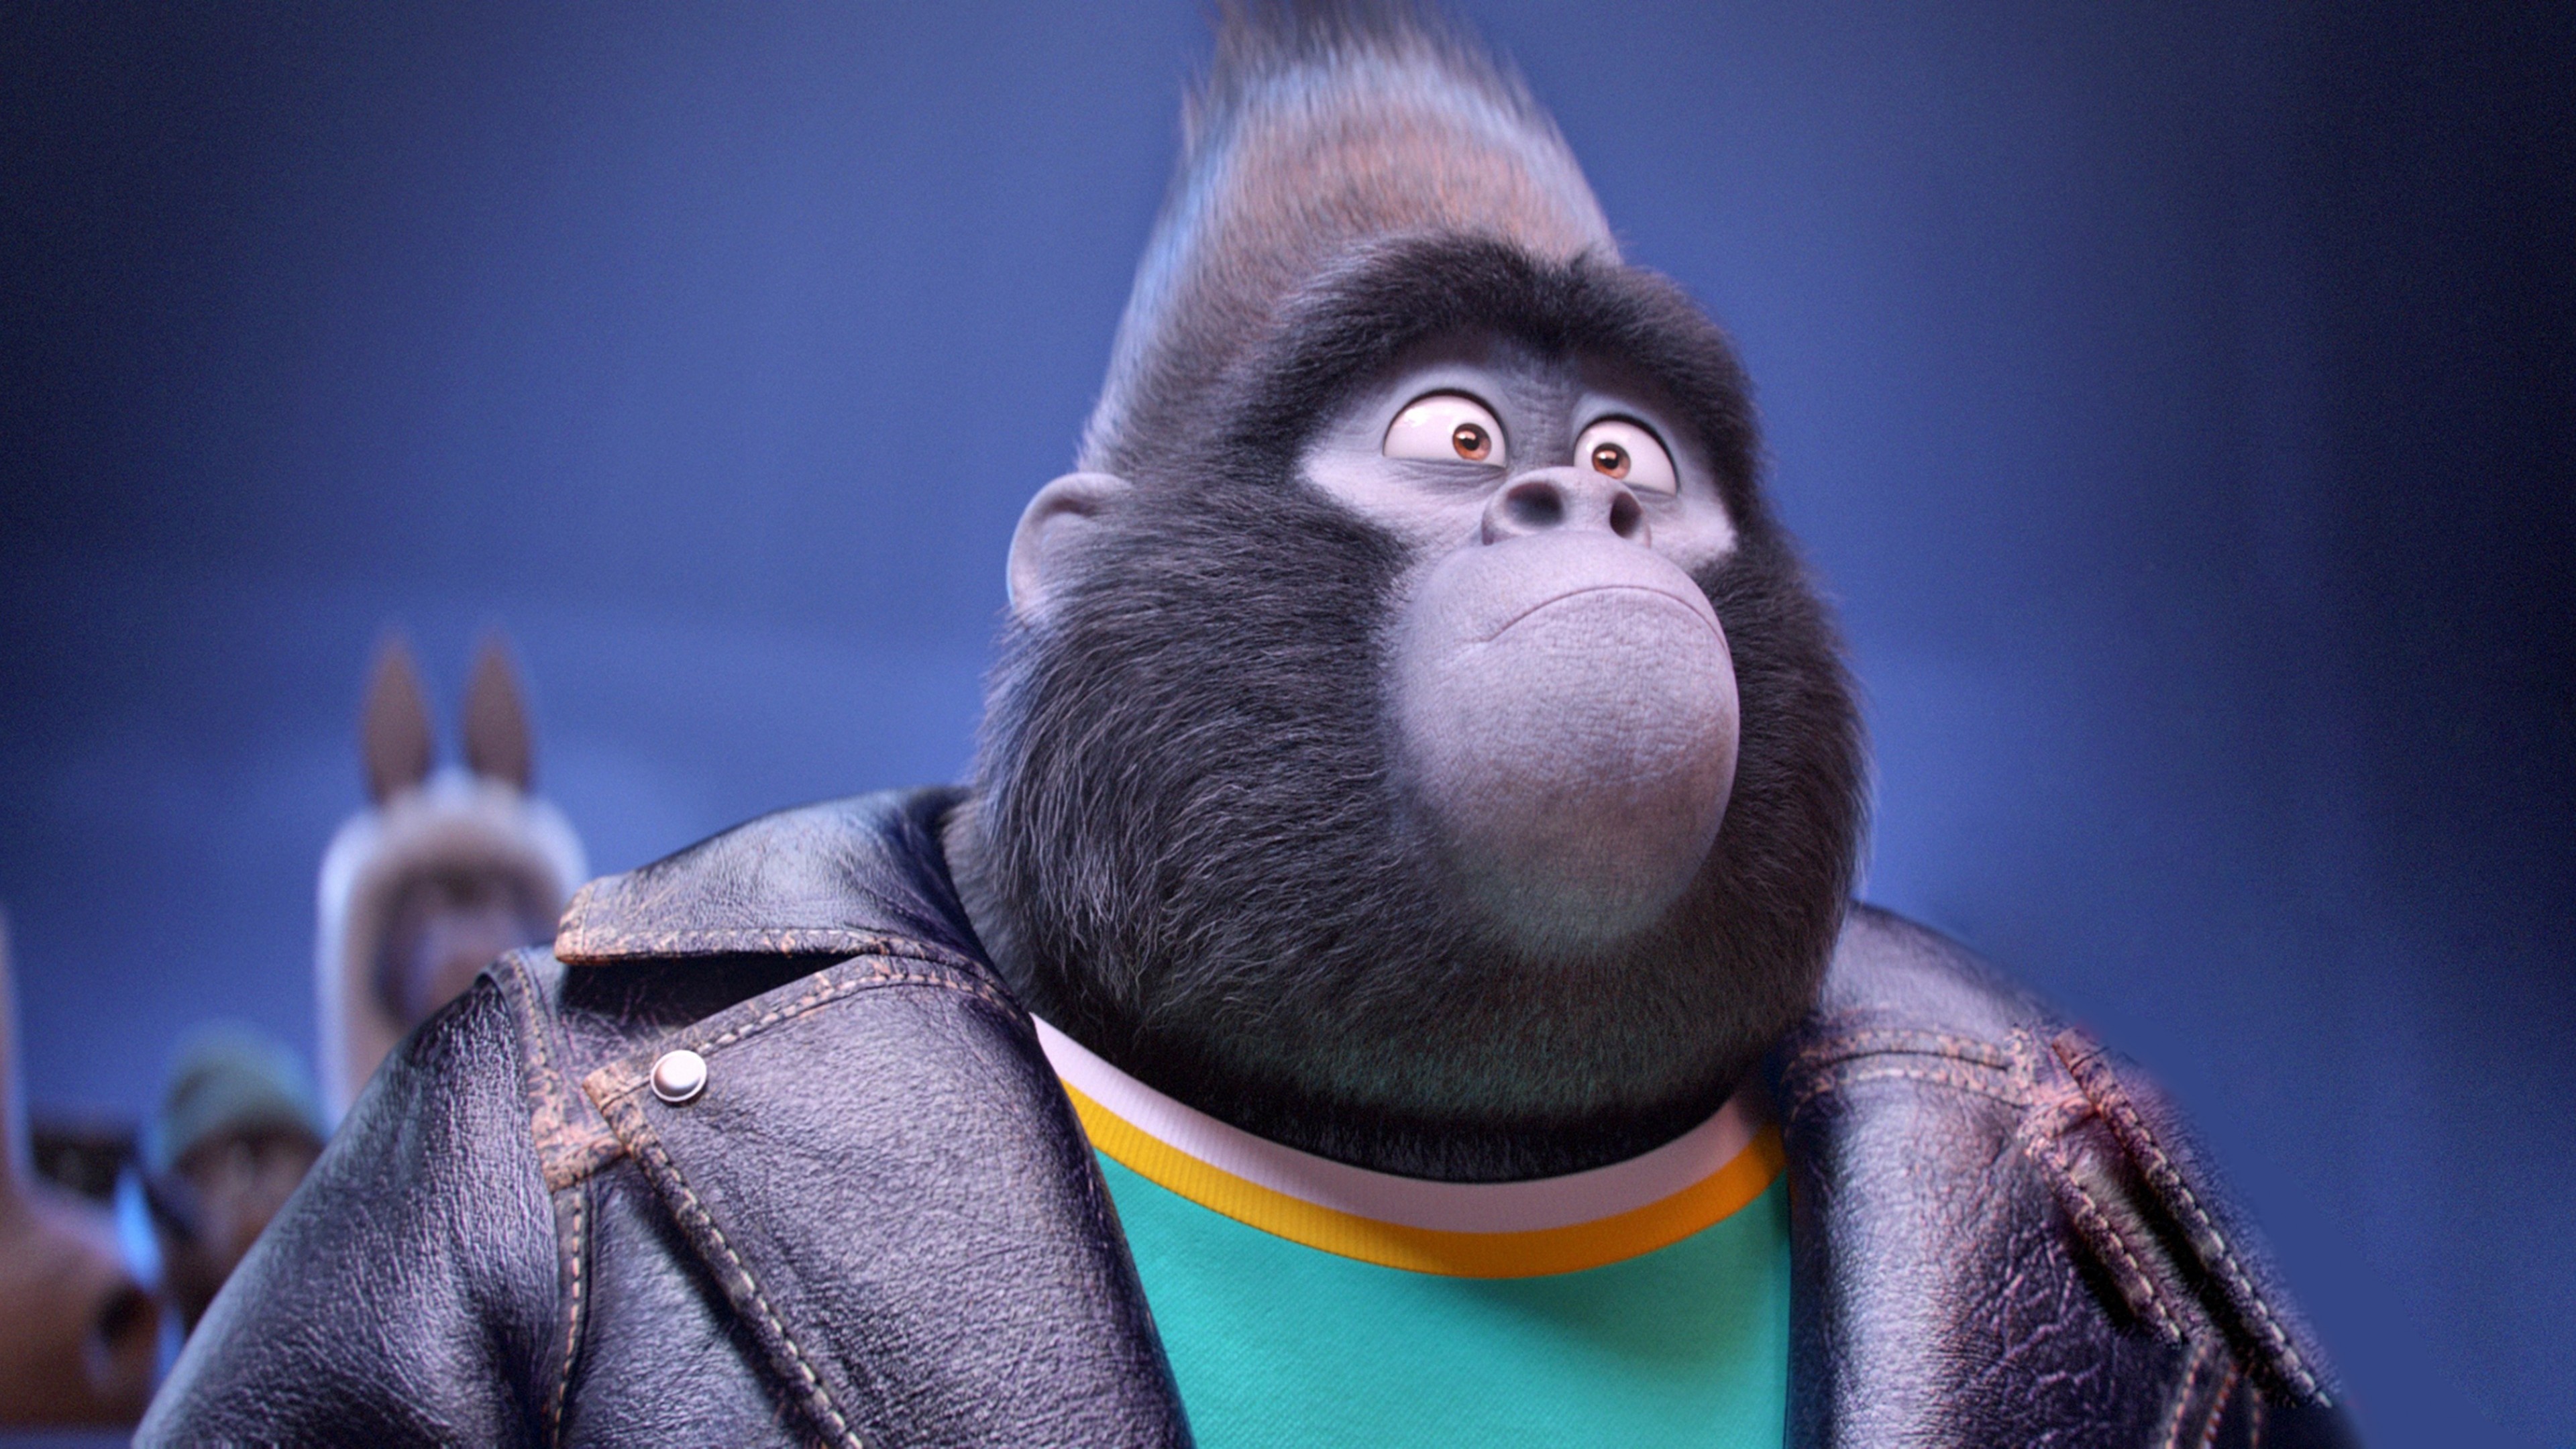 Sing animated movie, Talented gorilla, Musical extravaganza, 2016's best animation, 3840x2160 4K Desktop